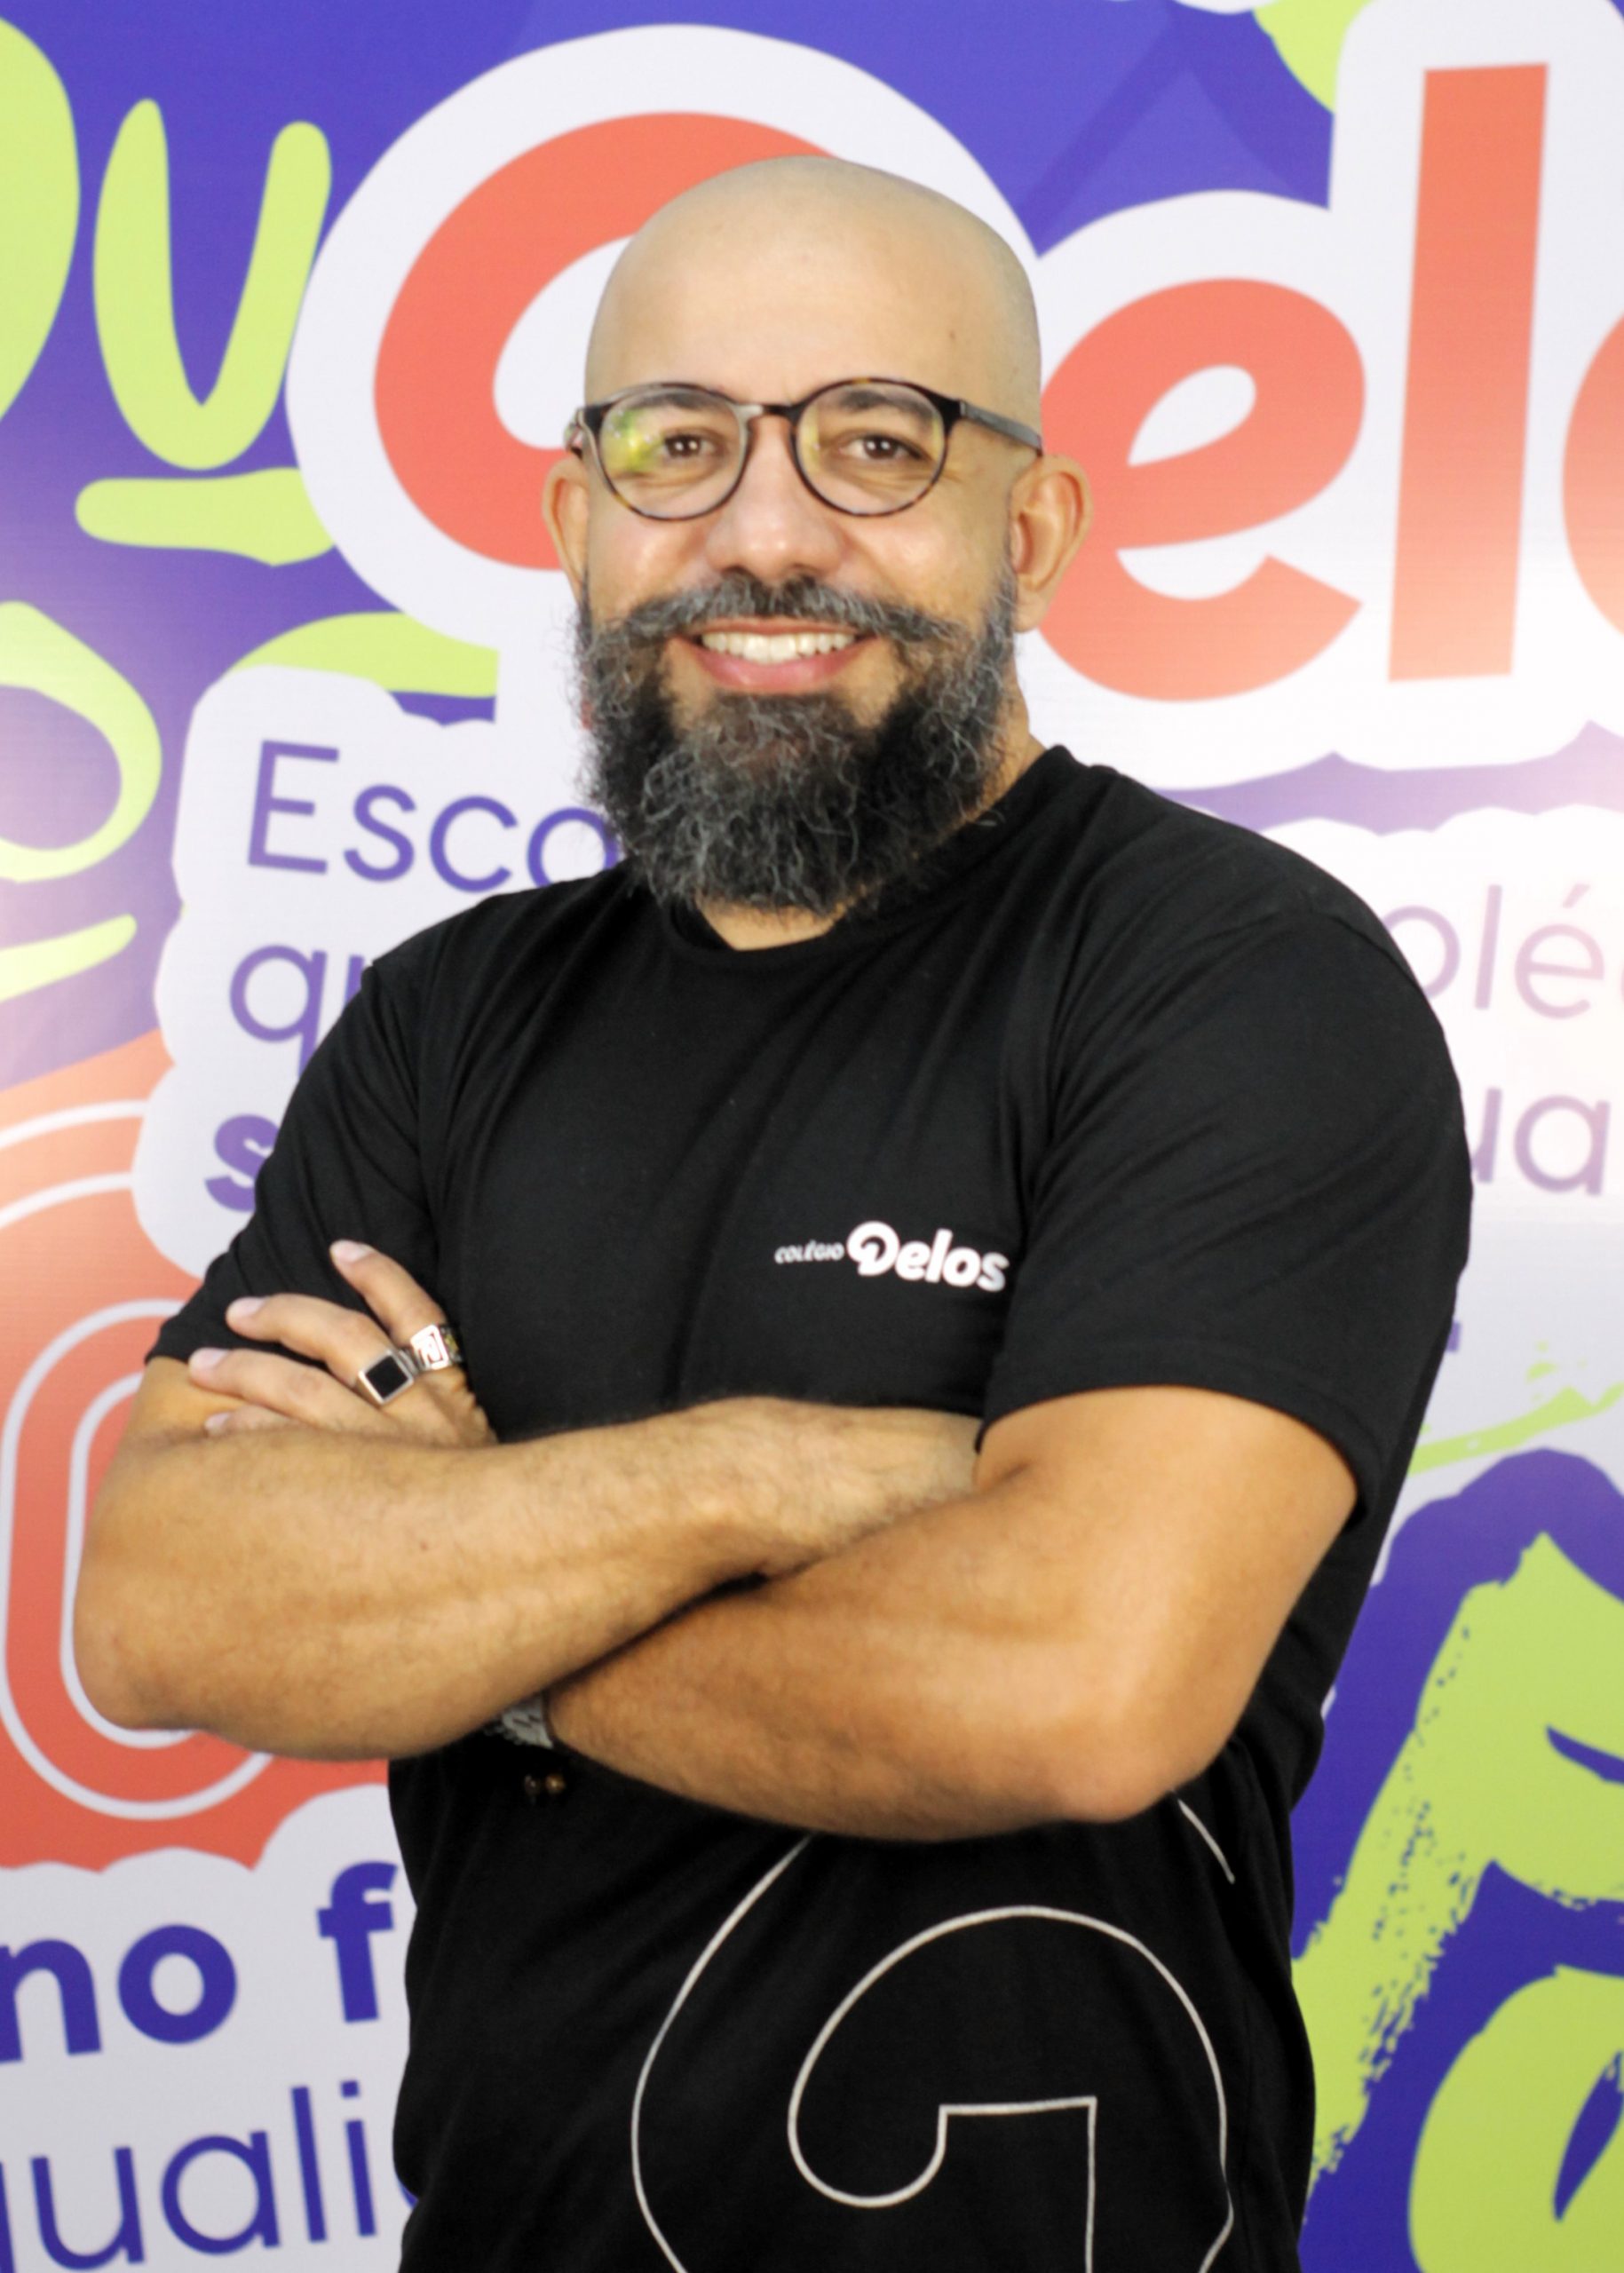 Michel Cunha